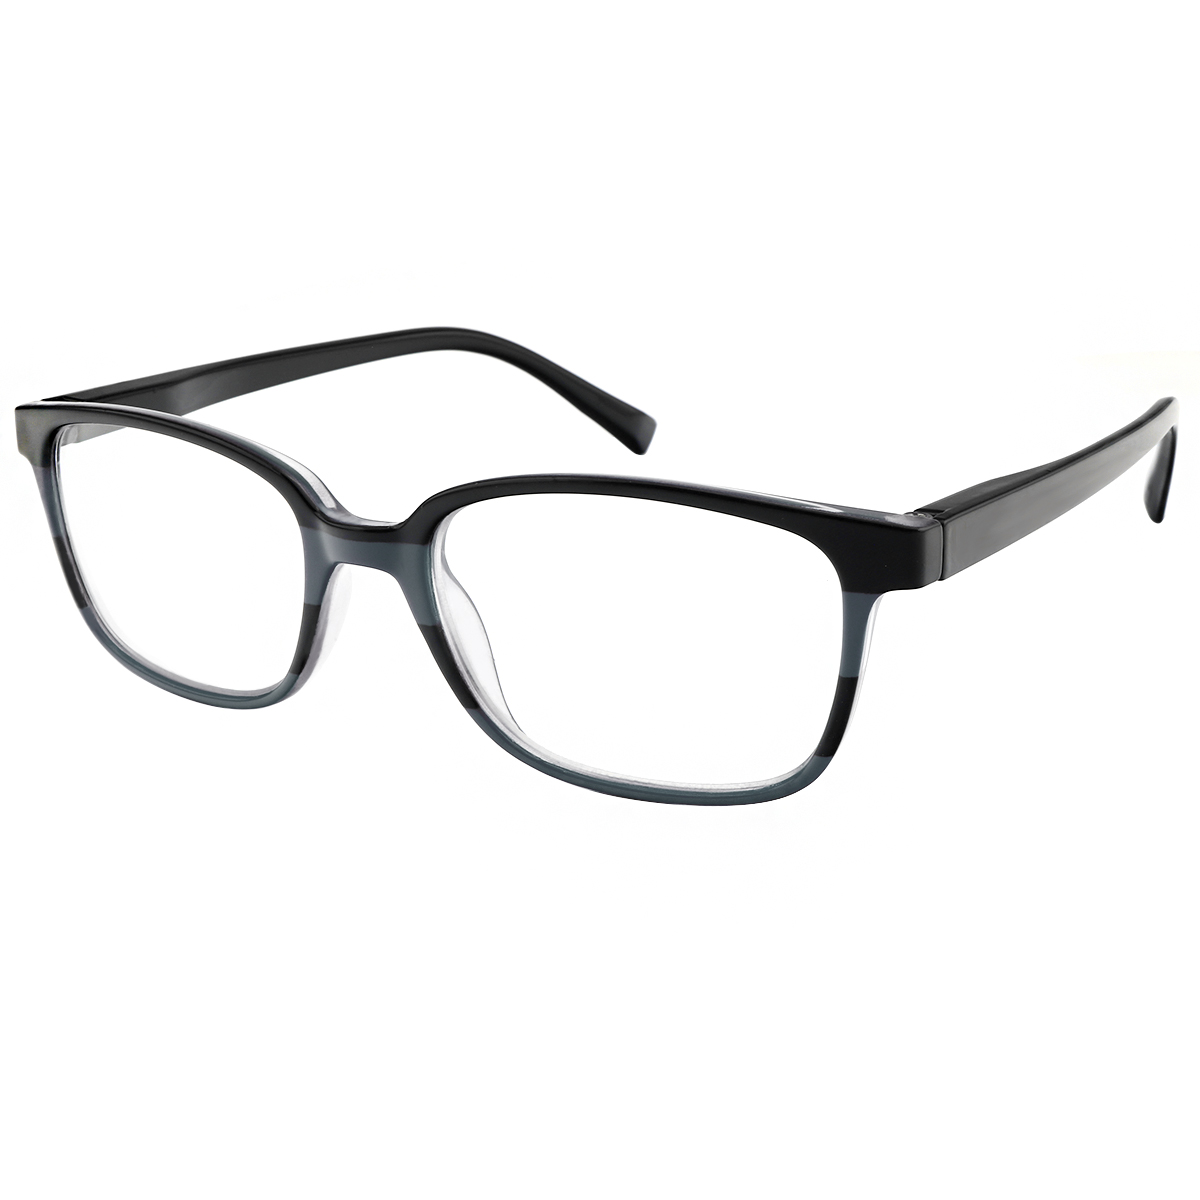 Lois - Rectangle Black-Gray Reading Glasses for Men & Women